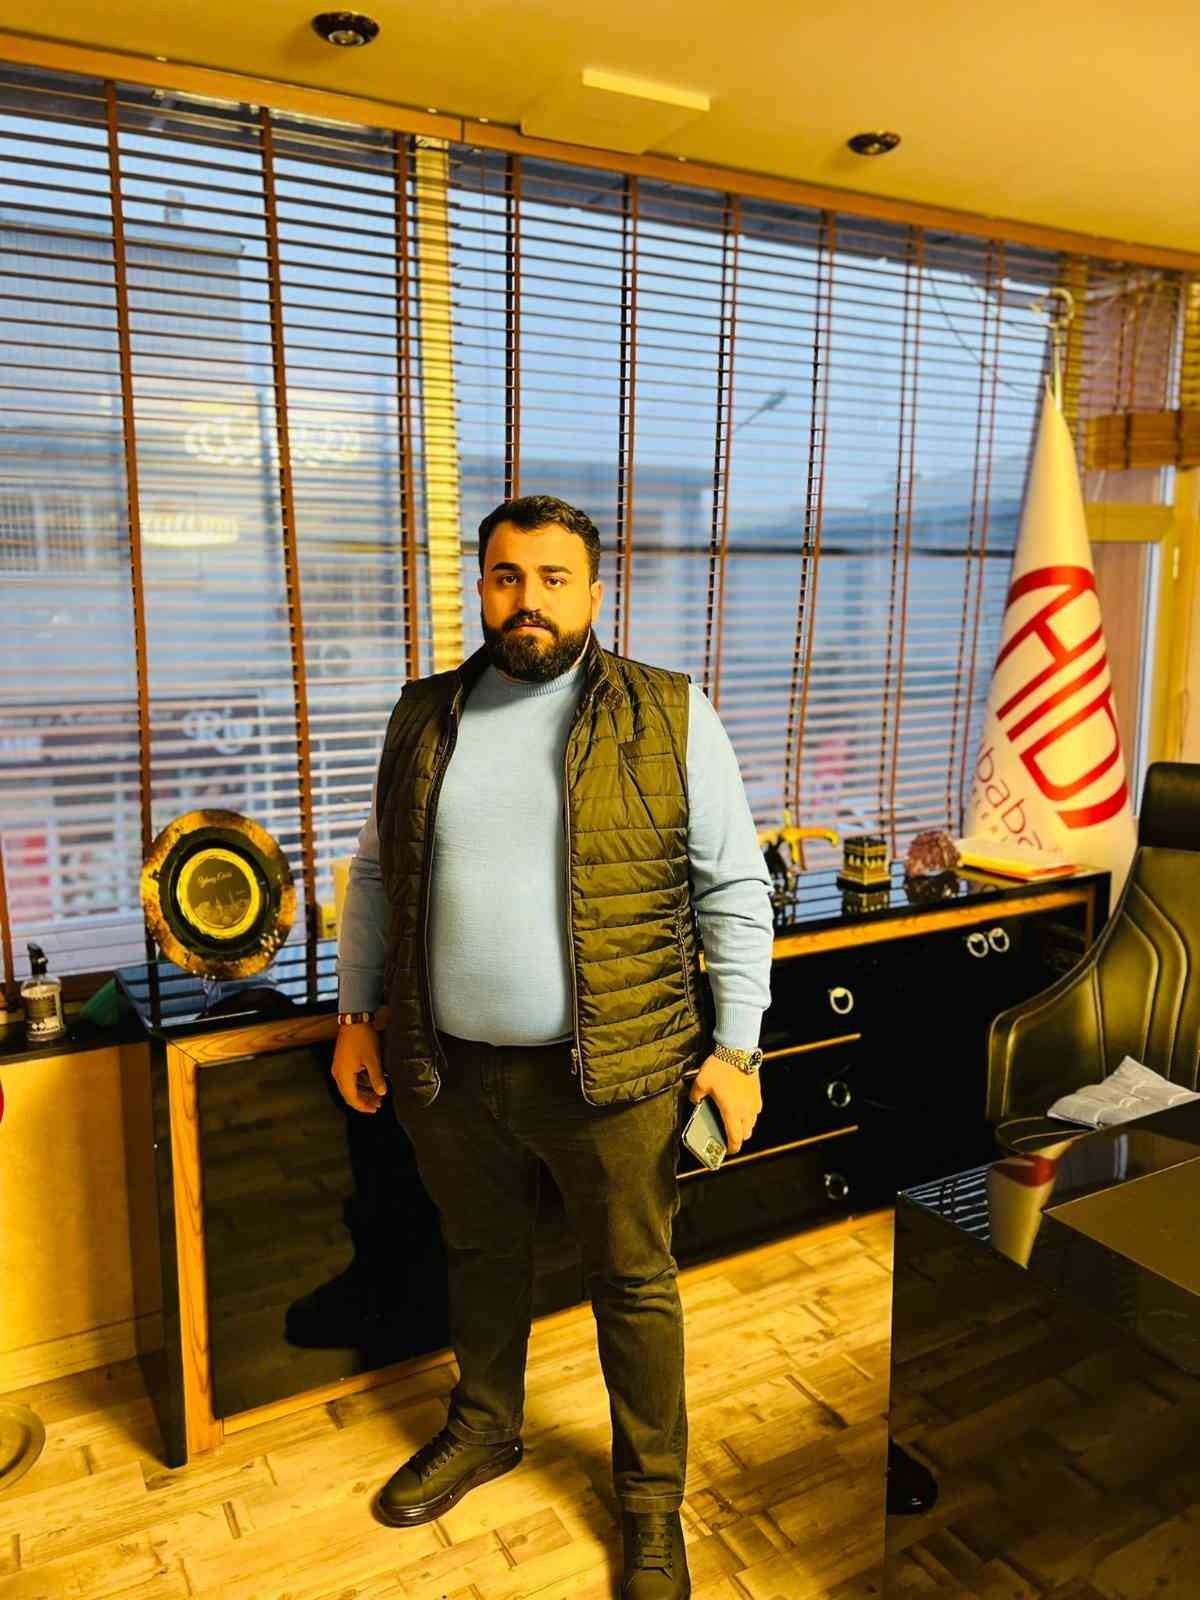 Genç CEO Elaldı: “Dolar düştü piyasa fiyatları düşmedi” #diyarbakir